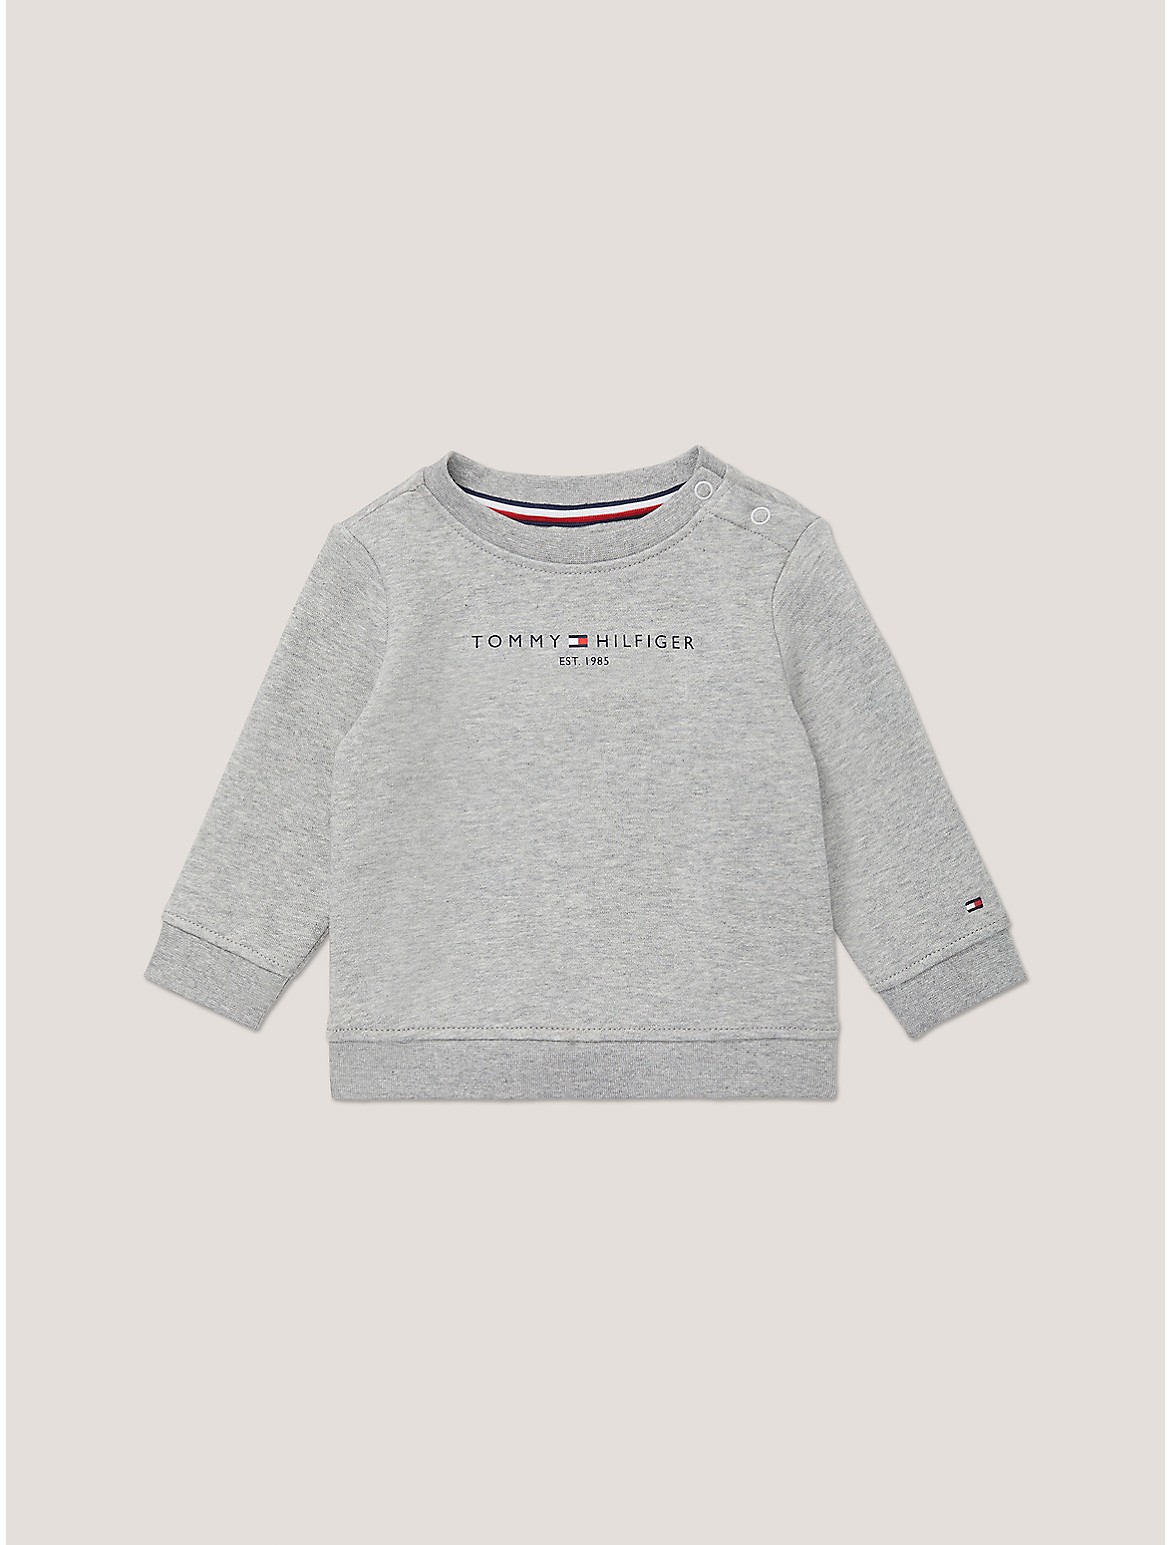 Tommy Hilfiger Boys' Babies' Tommy Logo Sweatshirt - Grey - 12M